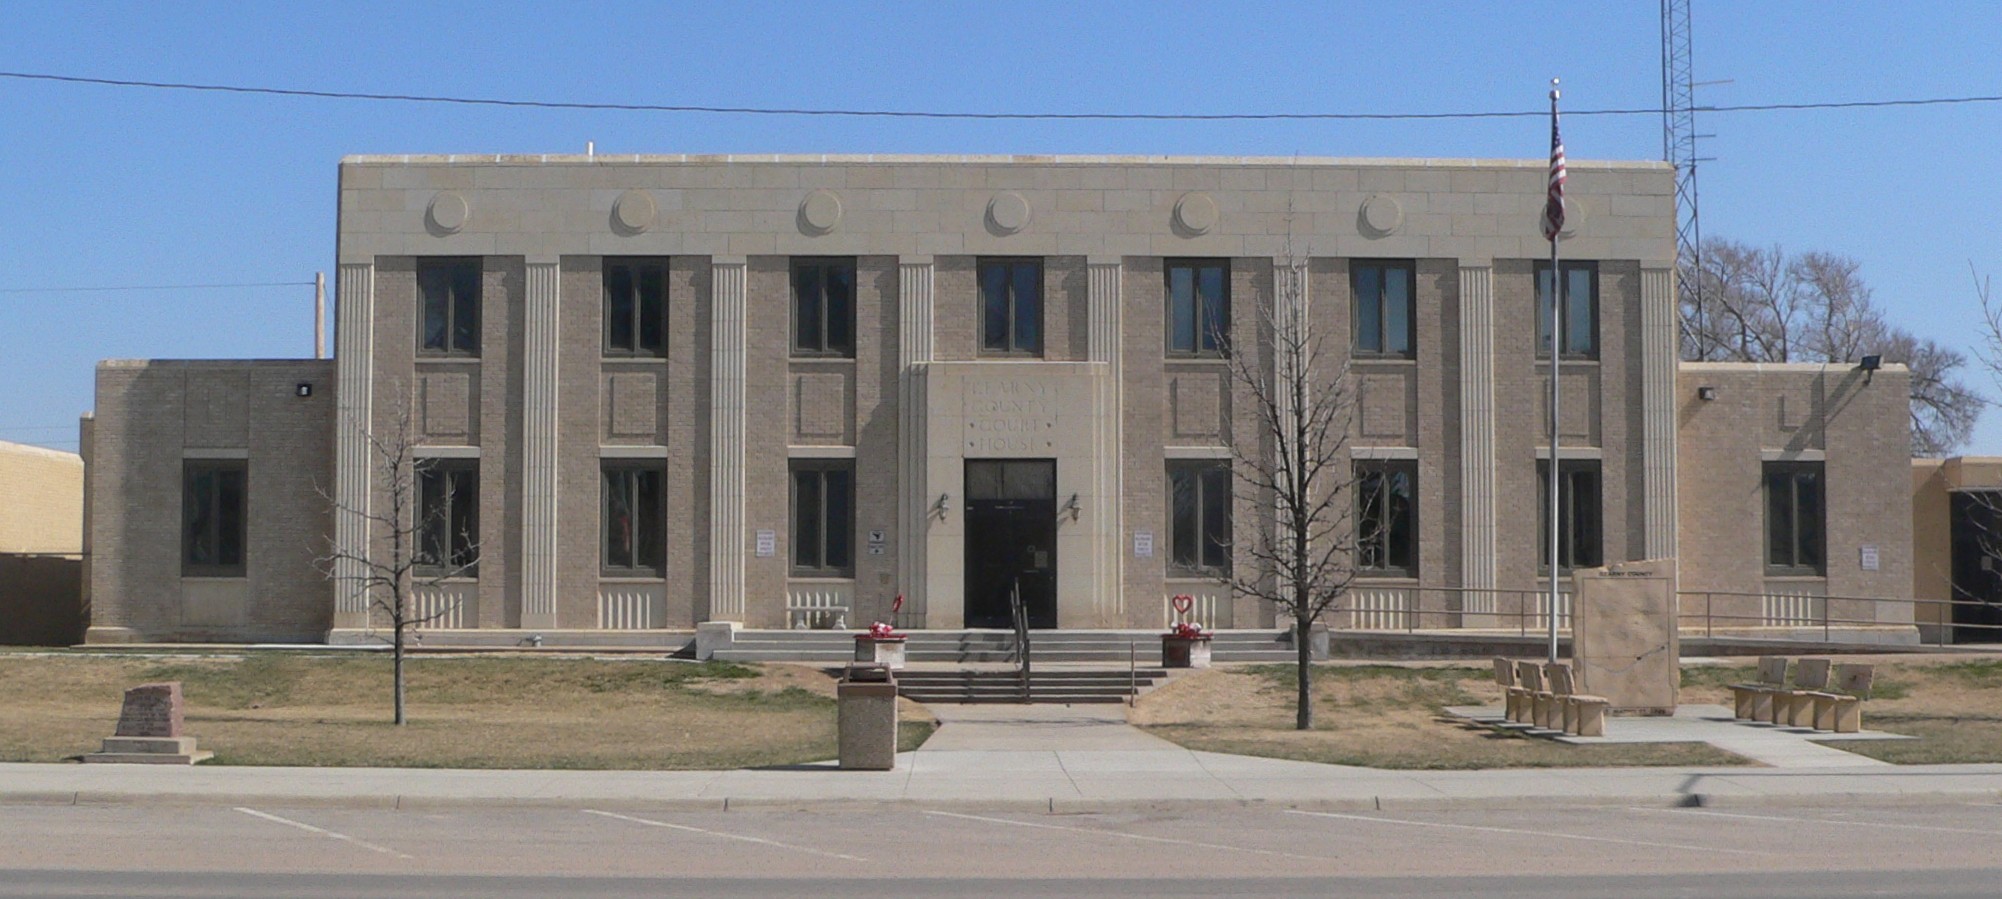 Image of Lakin Municipal Court